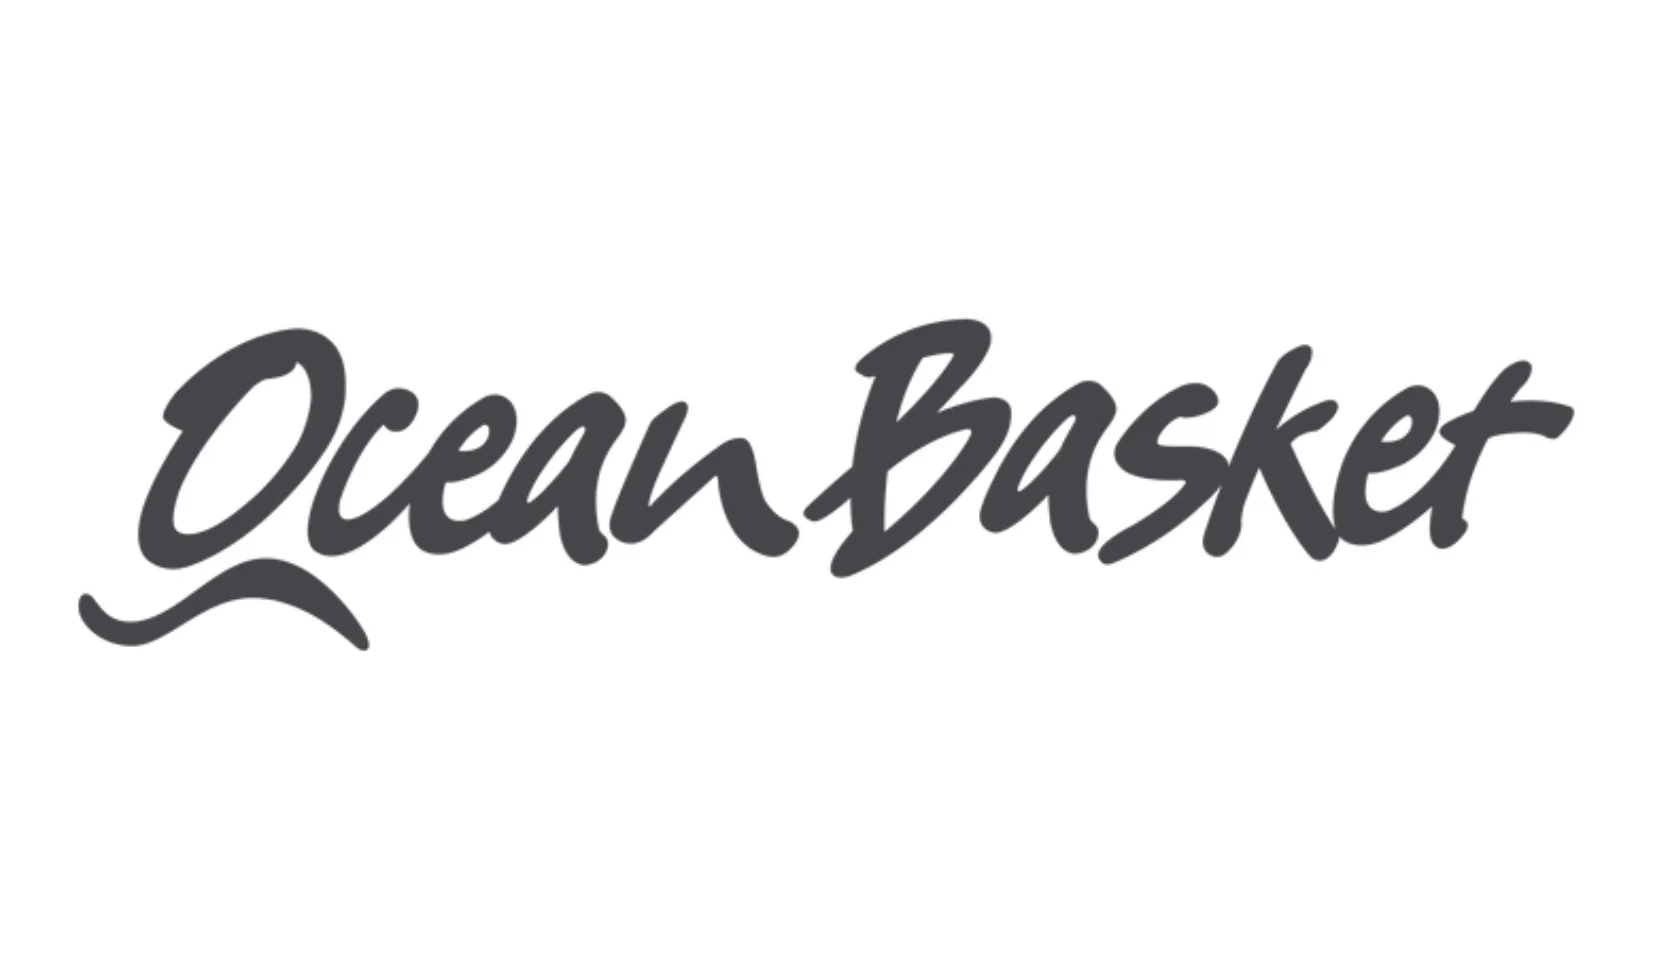 Ocean Basket